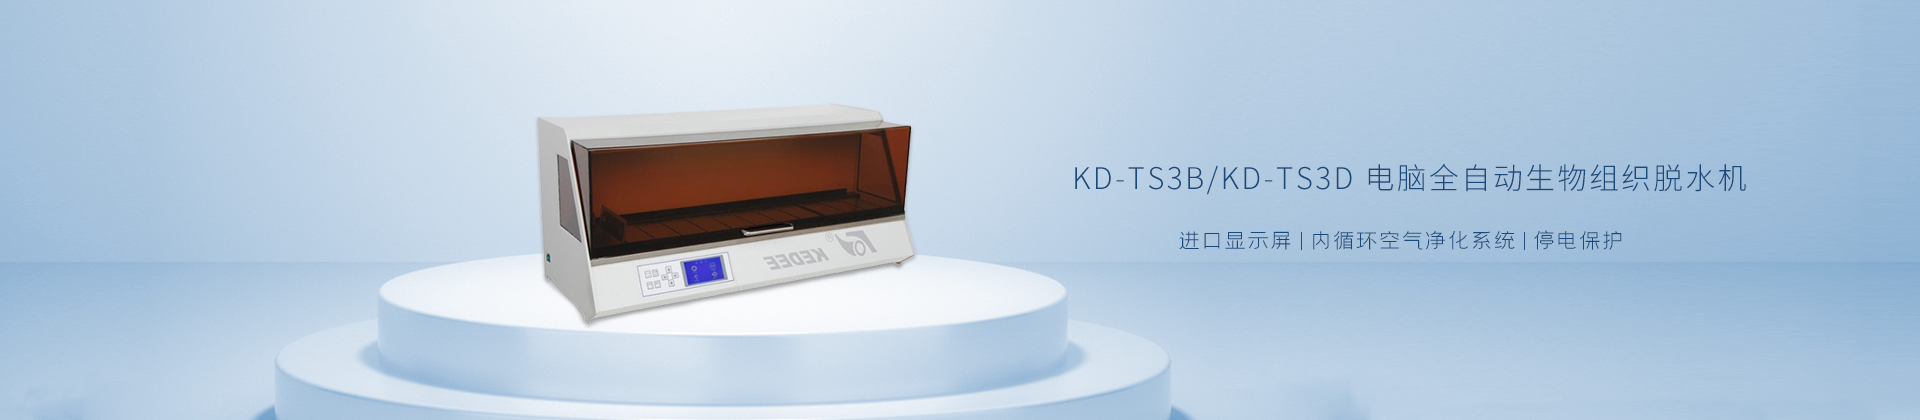 KD-TS3B/KD-TS3D 电脑全自动生物组织脱水机